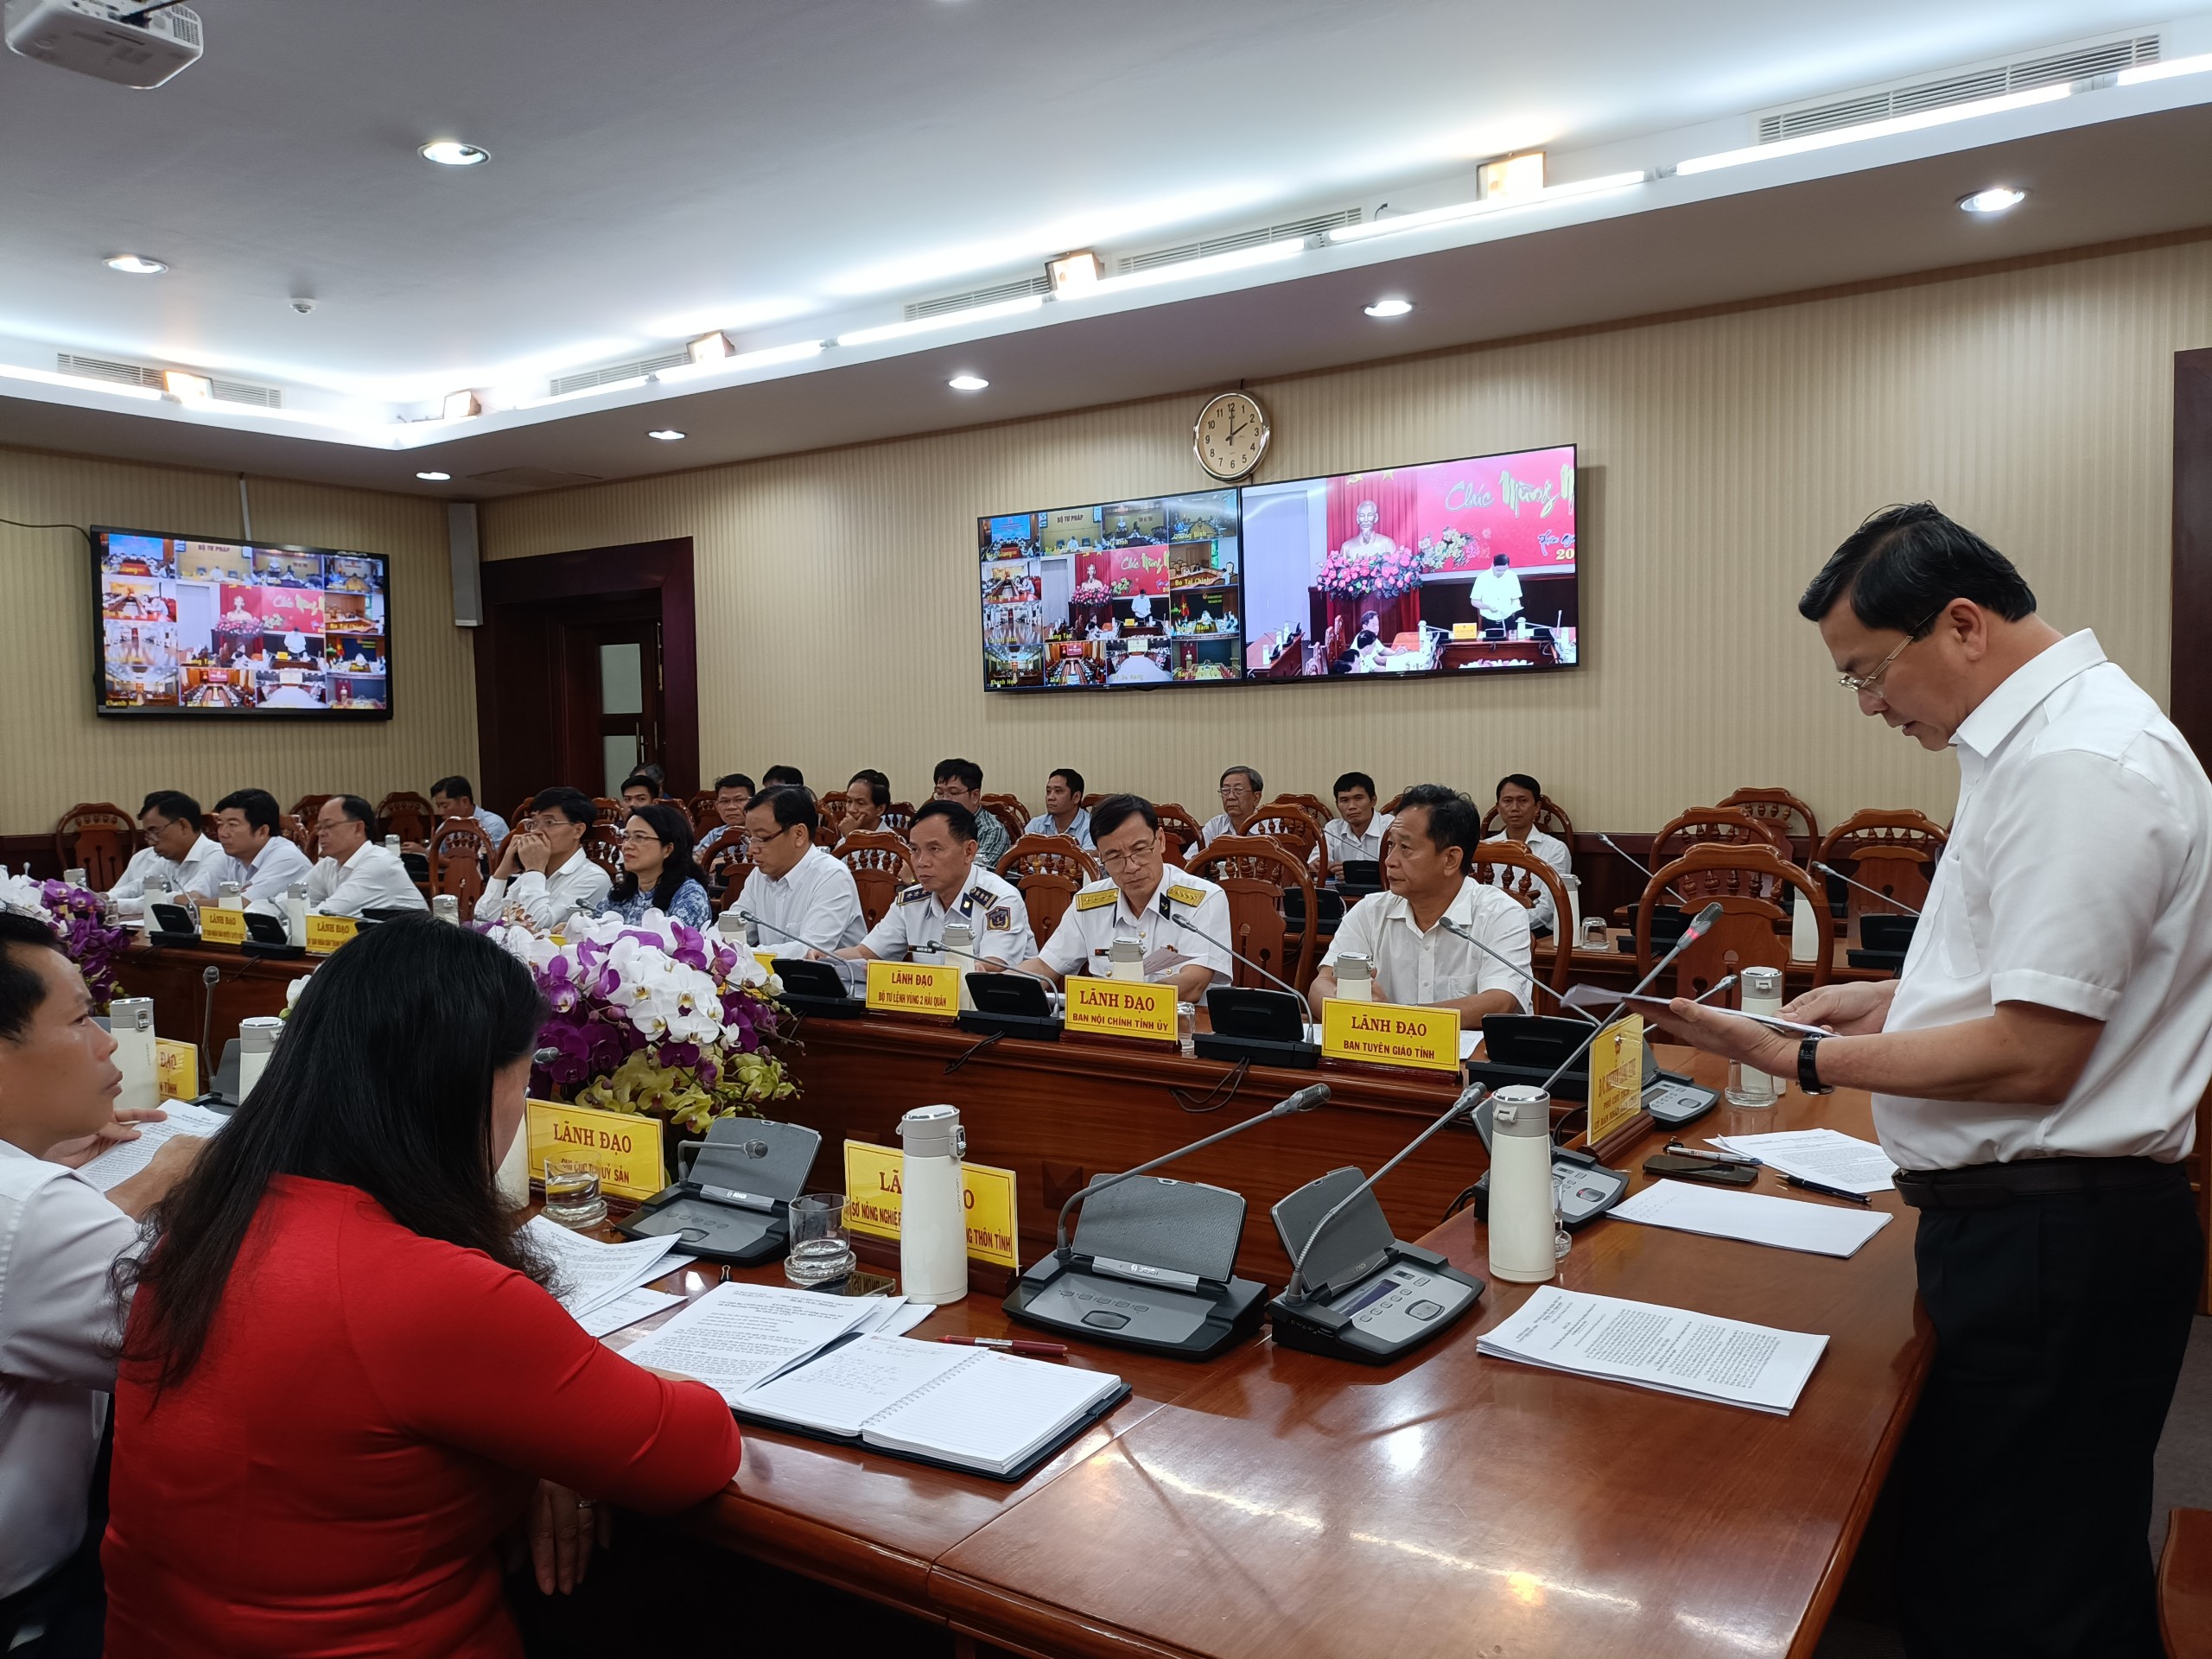 Đồng chí Nguyễn Công Vinh, Phó Chủ tịch UBND tỉnh Bà Rịa - Vũng Tàu phát biểu tại cuộc họp